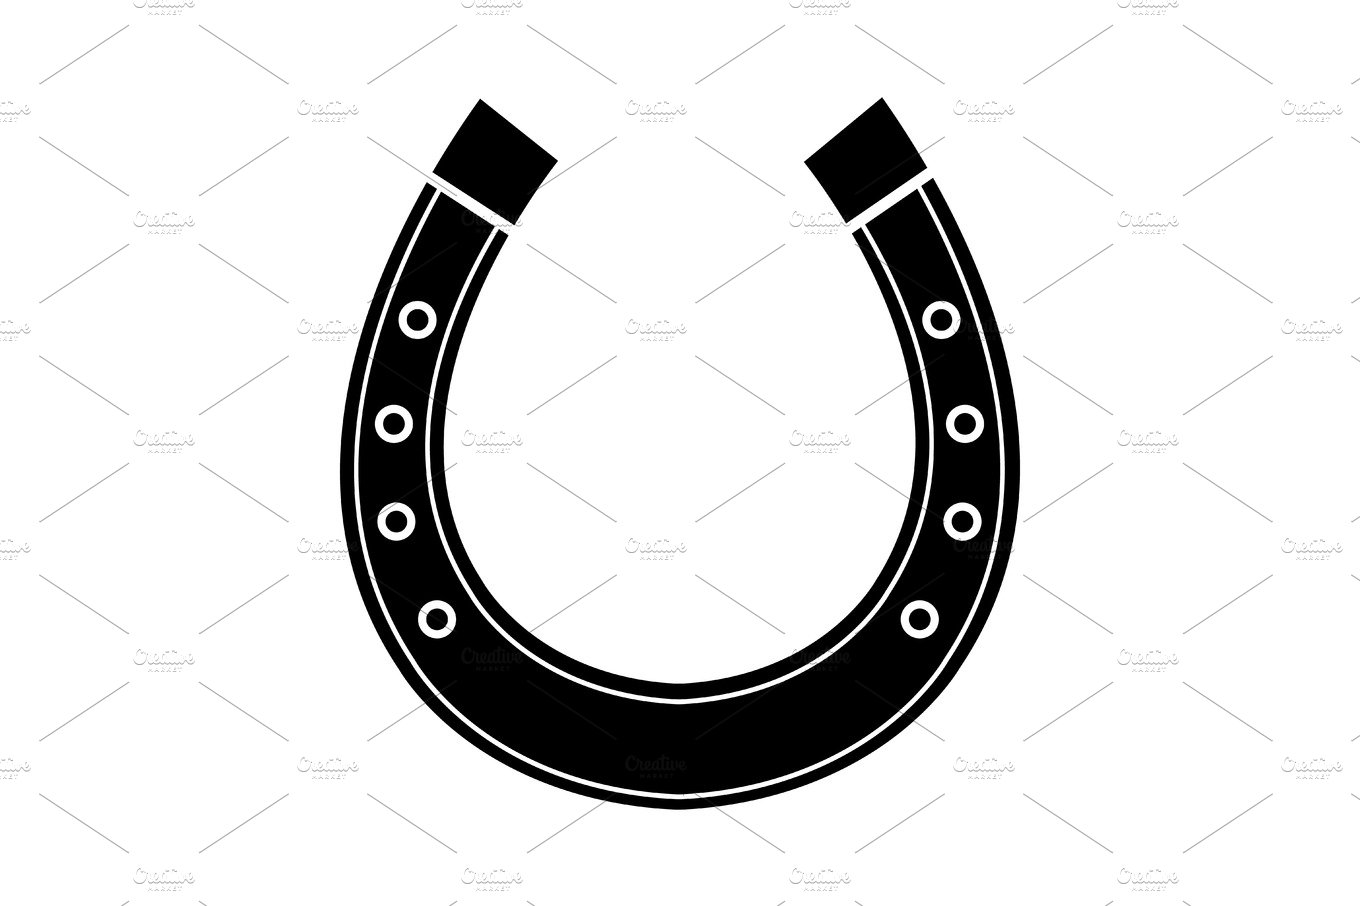 Horseshoe icon cover image.